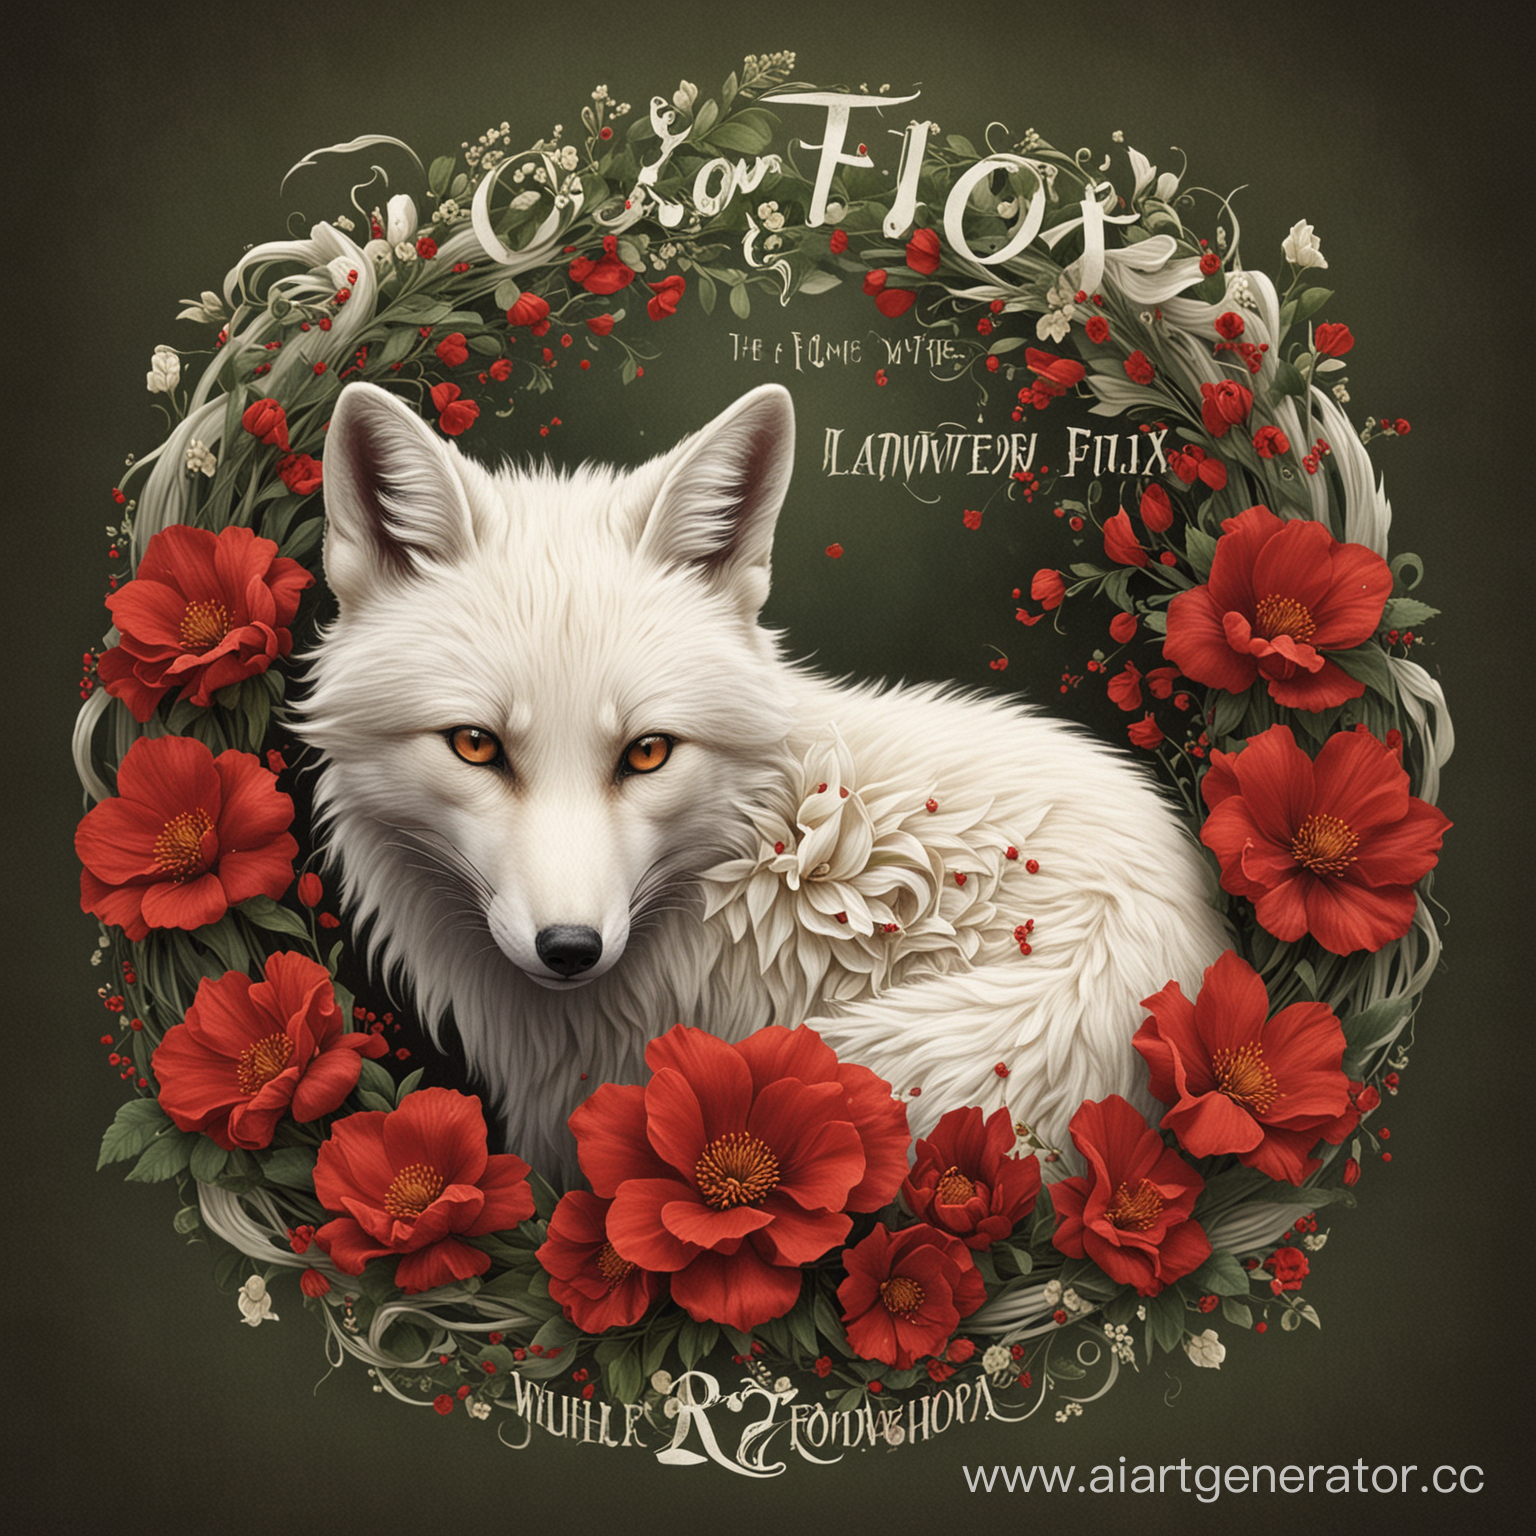 Обложка альбома "Лисий цветок" 
Белая лиса свернулась вокруг красного цветка.
